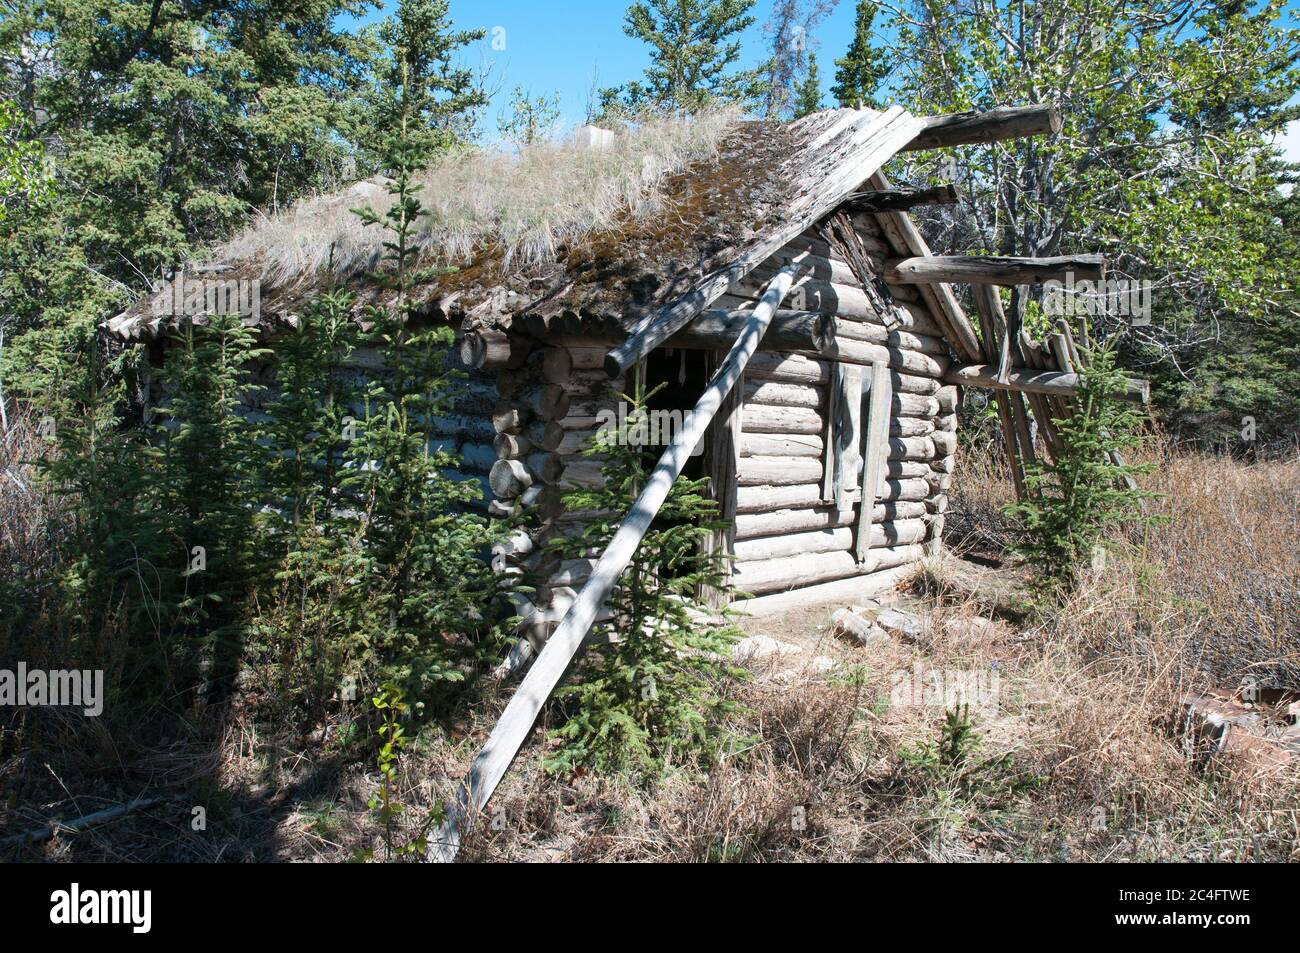 Una storica cabina abbandonata di legno di prospettore di epoca di Klondike Gold Rush nel Parco Nazionale di Kluane, territorio di Yukon, Canada. Foto Stock